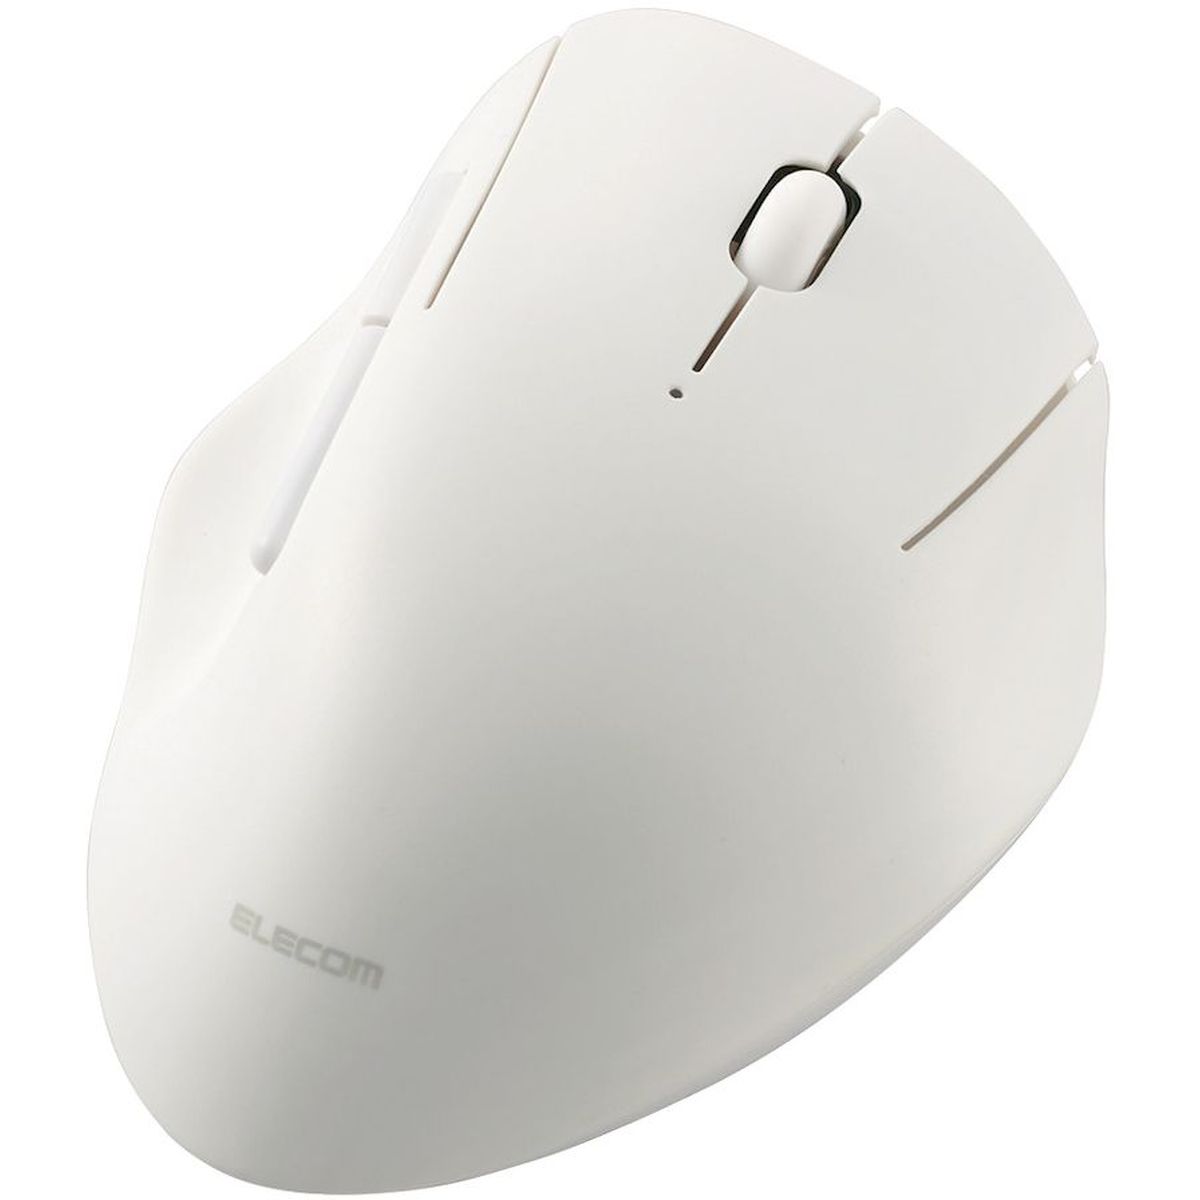 マウス/Bluetooth/5ボタン/抗菌/静音設計/ホワイト